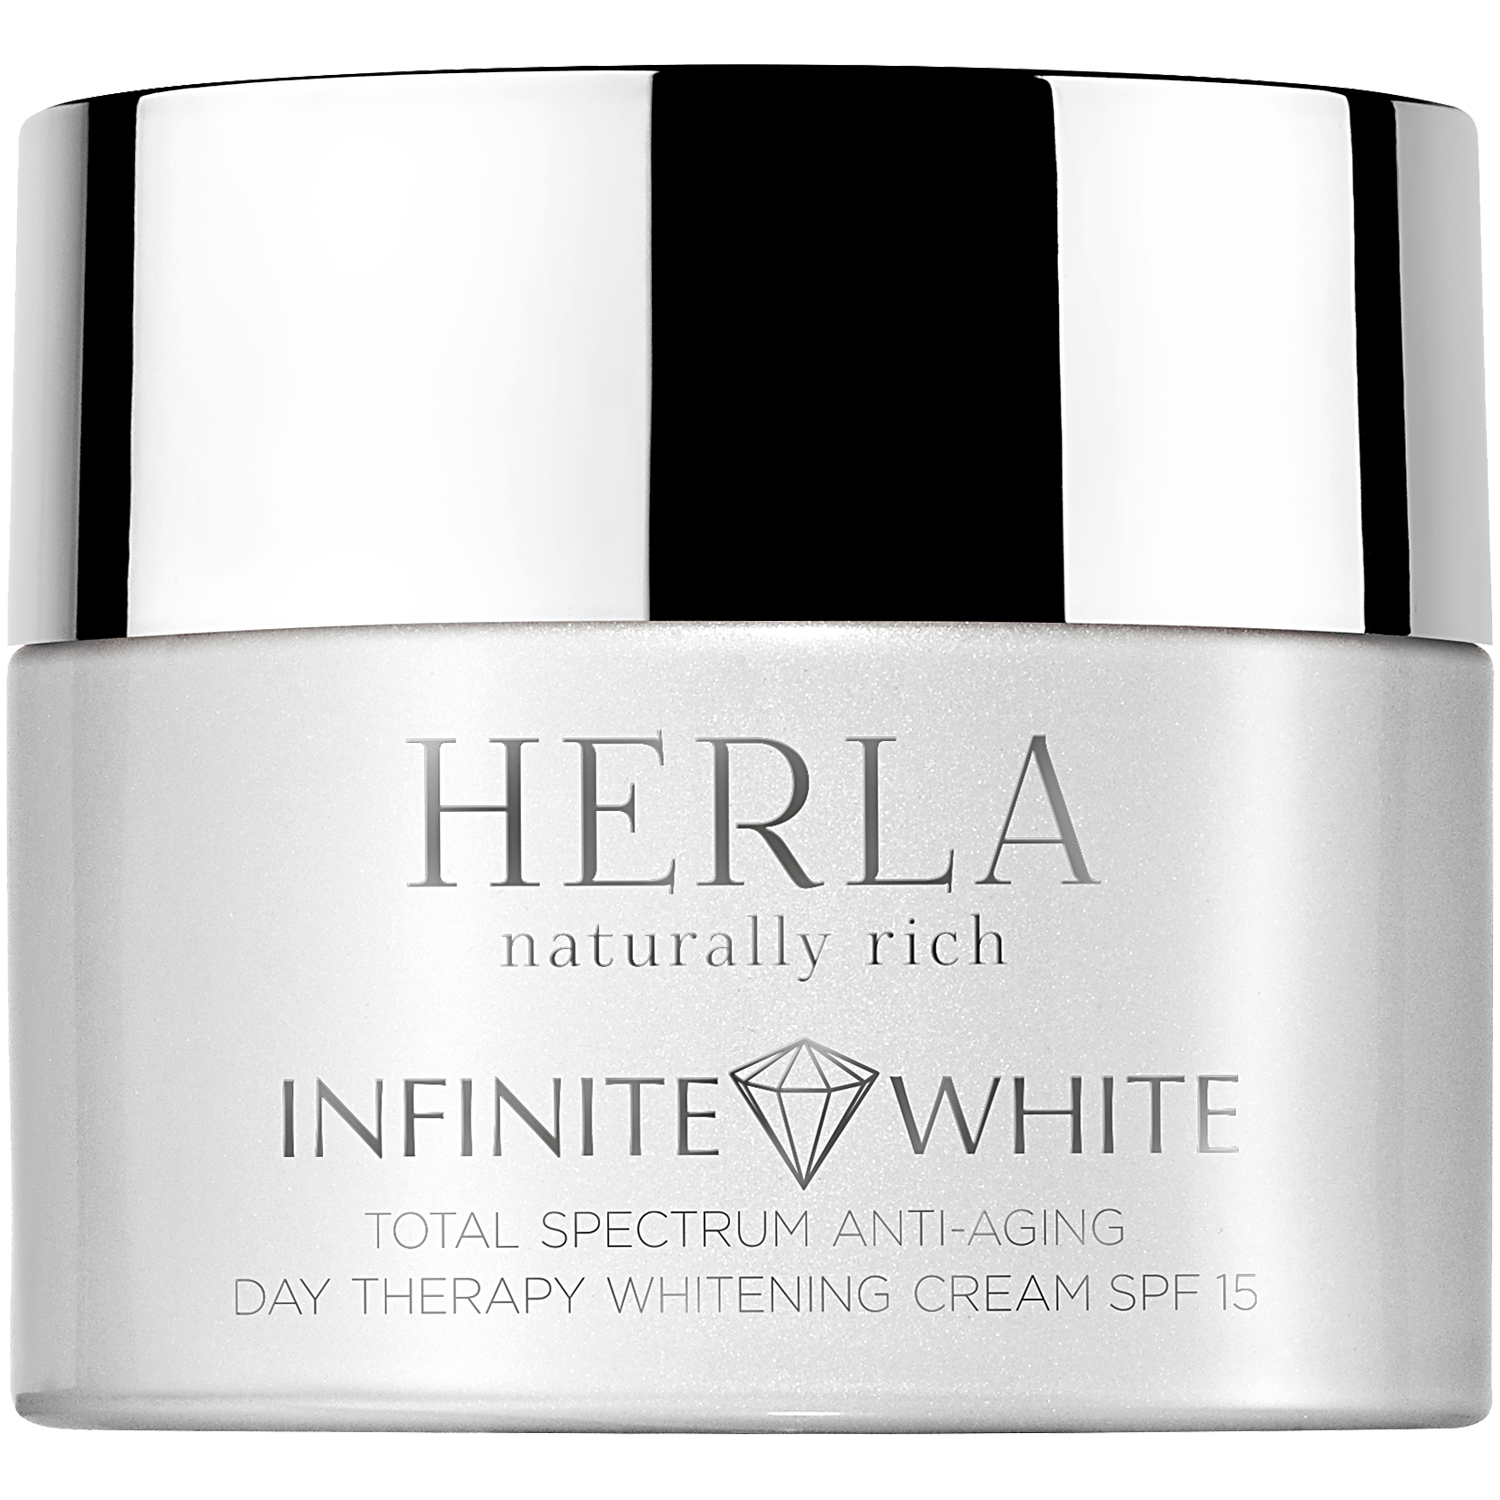 Herla Infinite White антивозрастной отбеливающий крем против пигментных пятен с фильтром SPF15 на день для лица, 50 мл